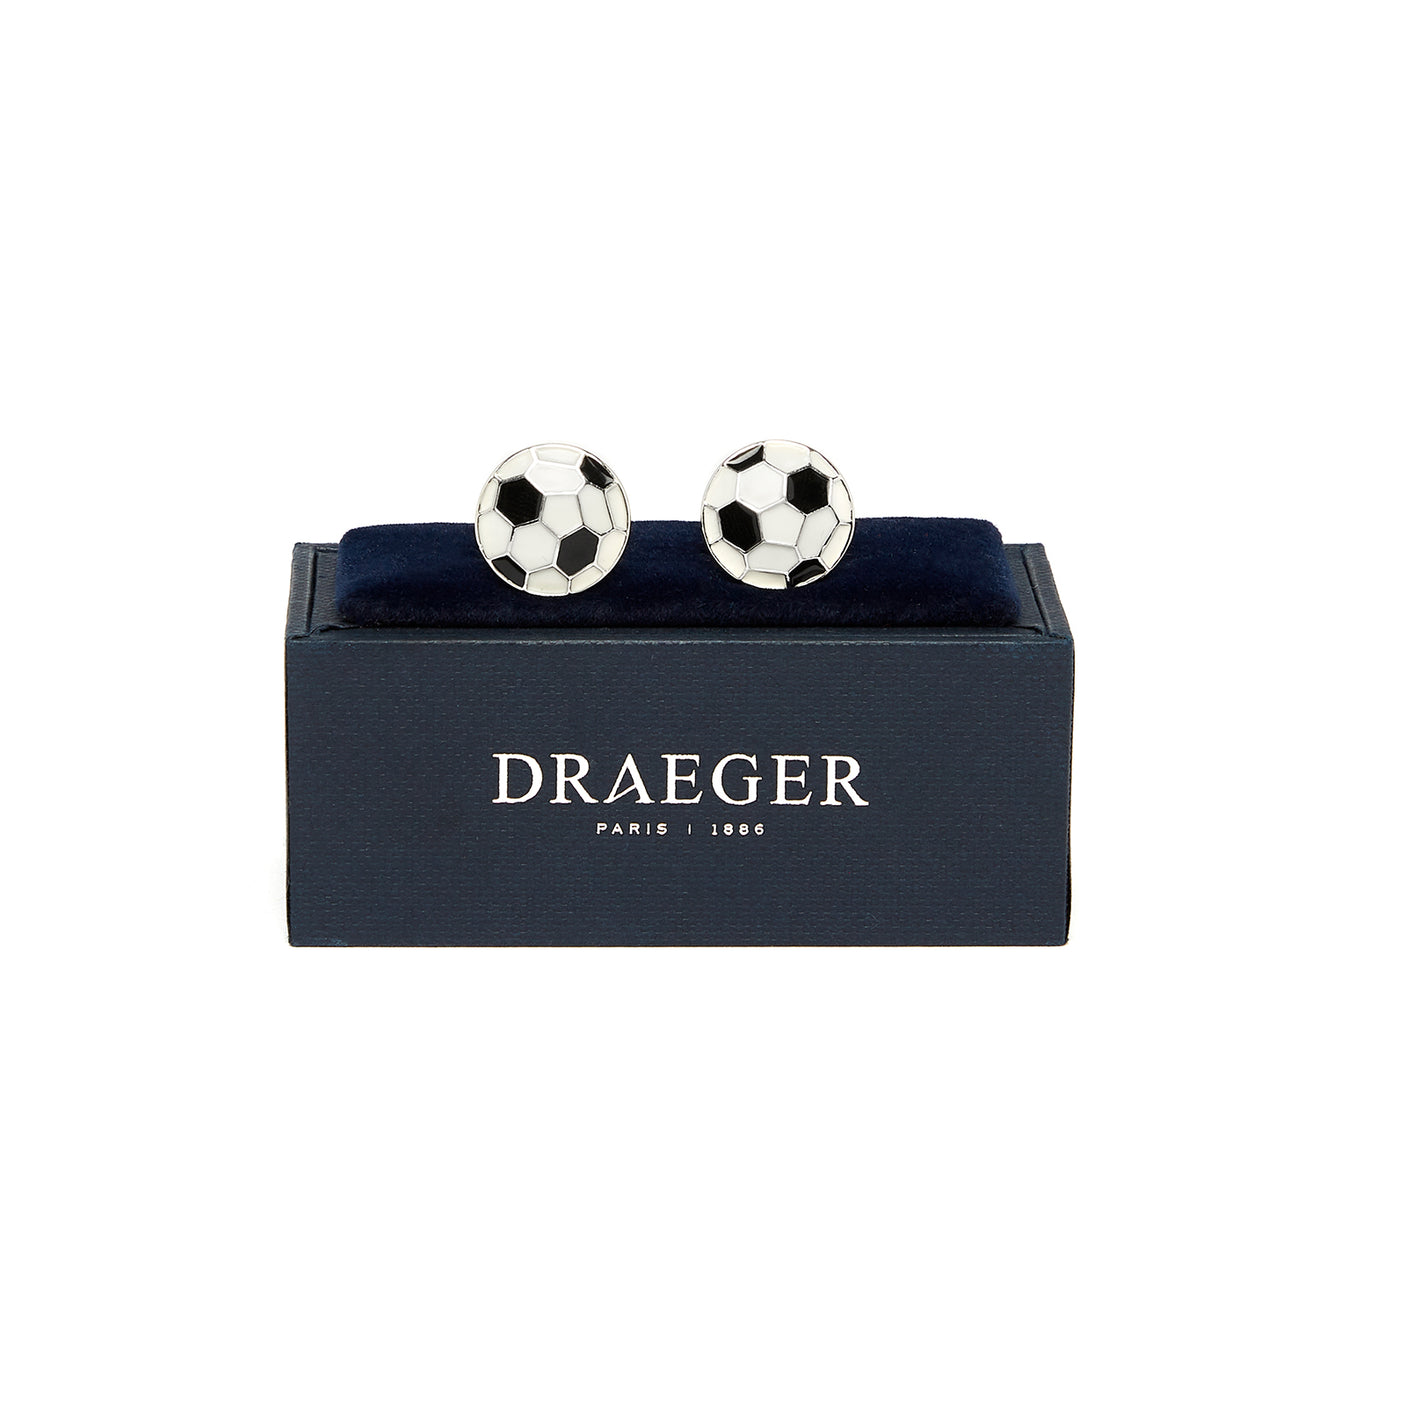 Gemelos de acero - Balón de fútbol - Blanco y negro - Hombre - Draeger